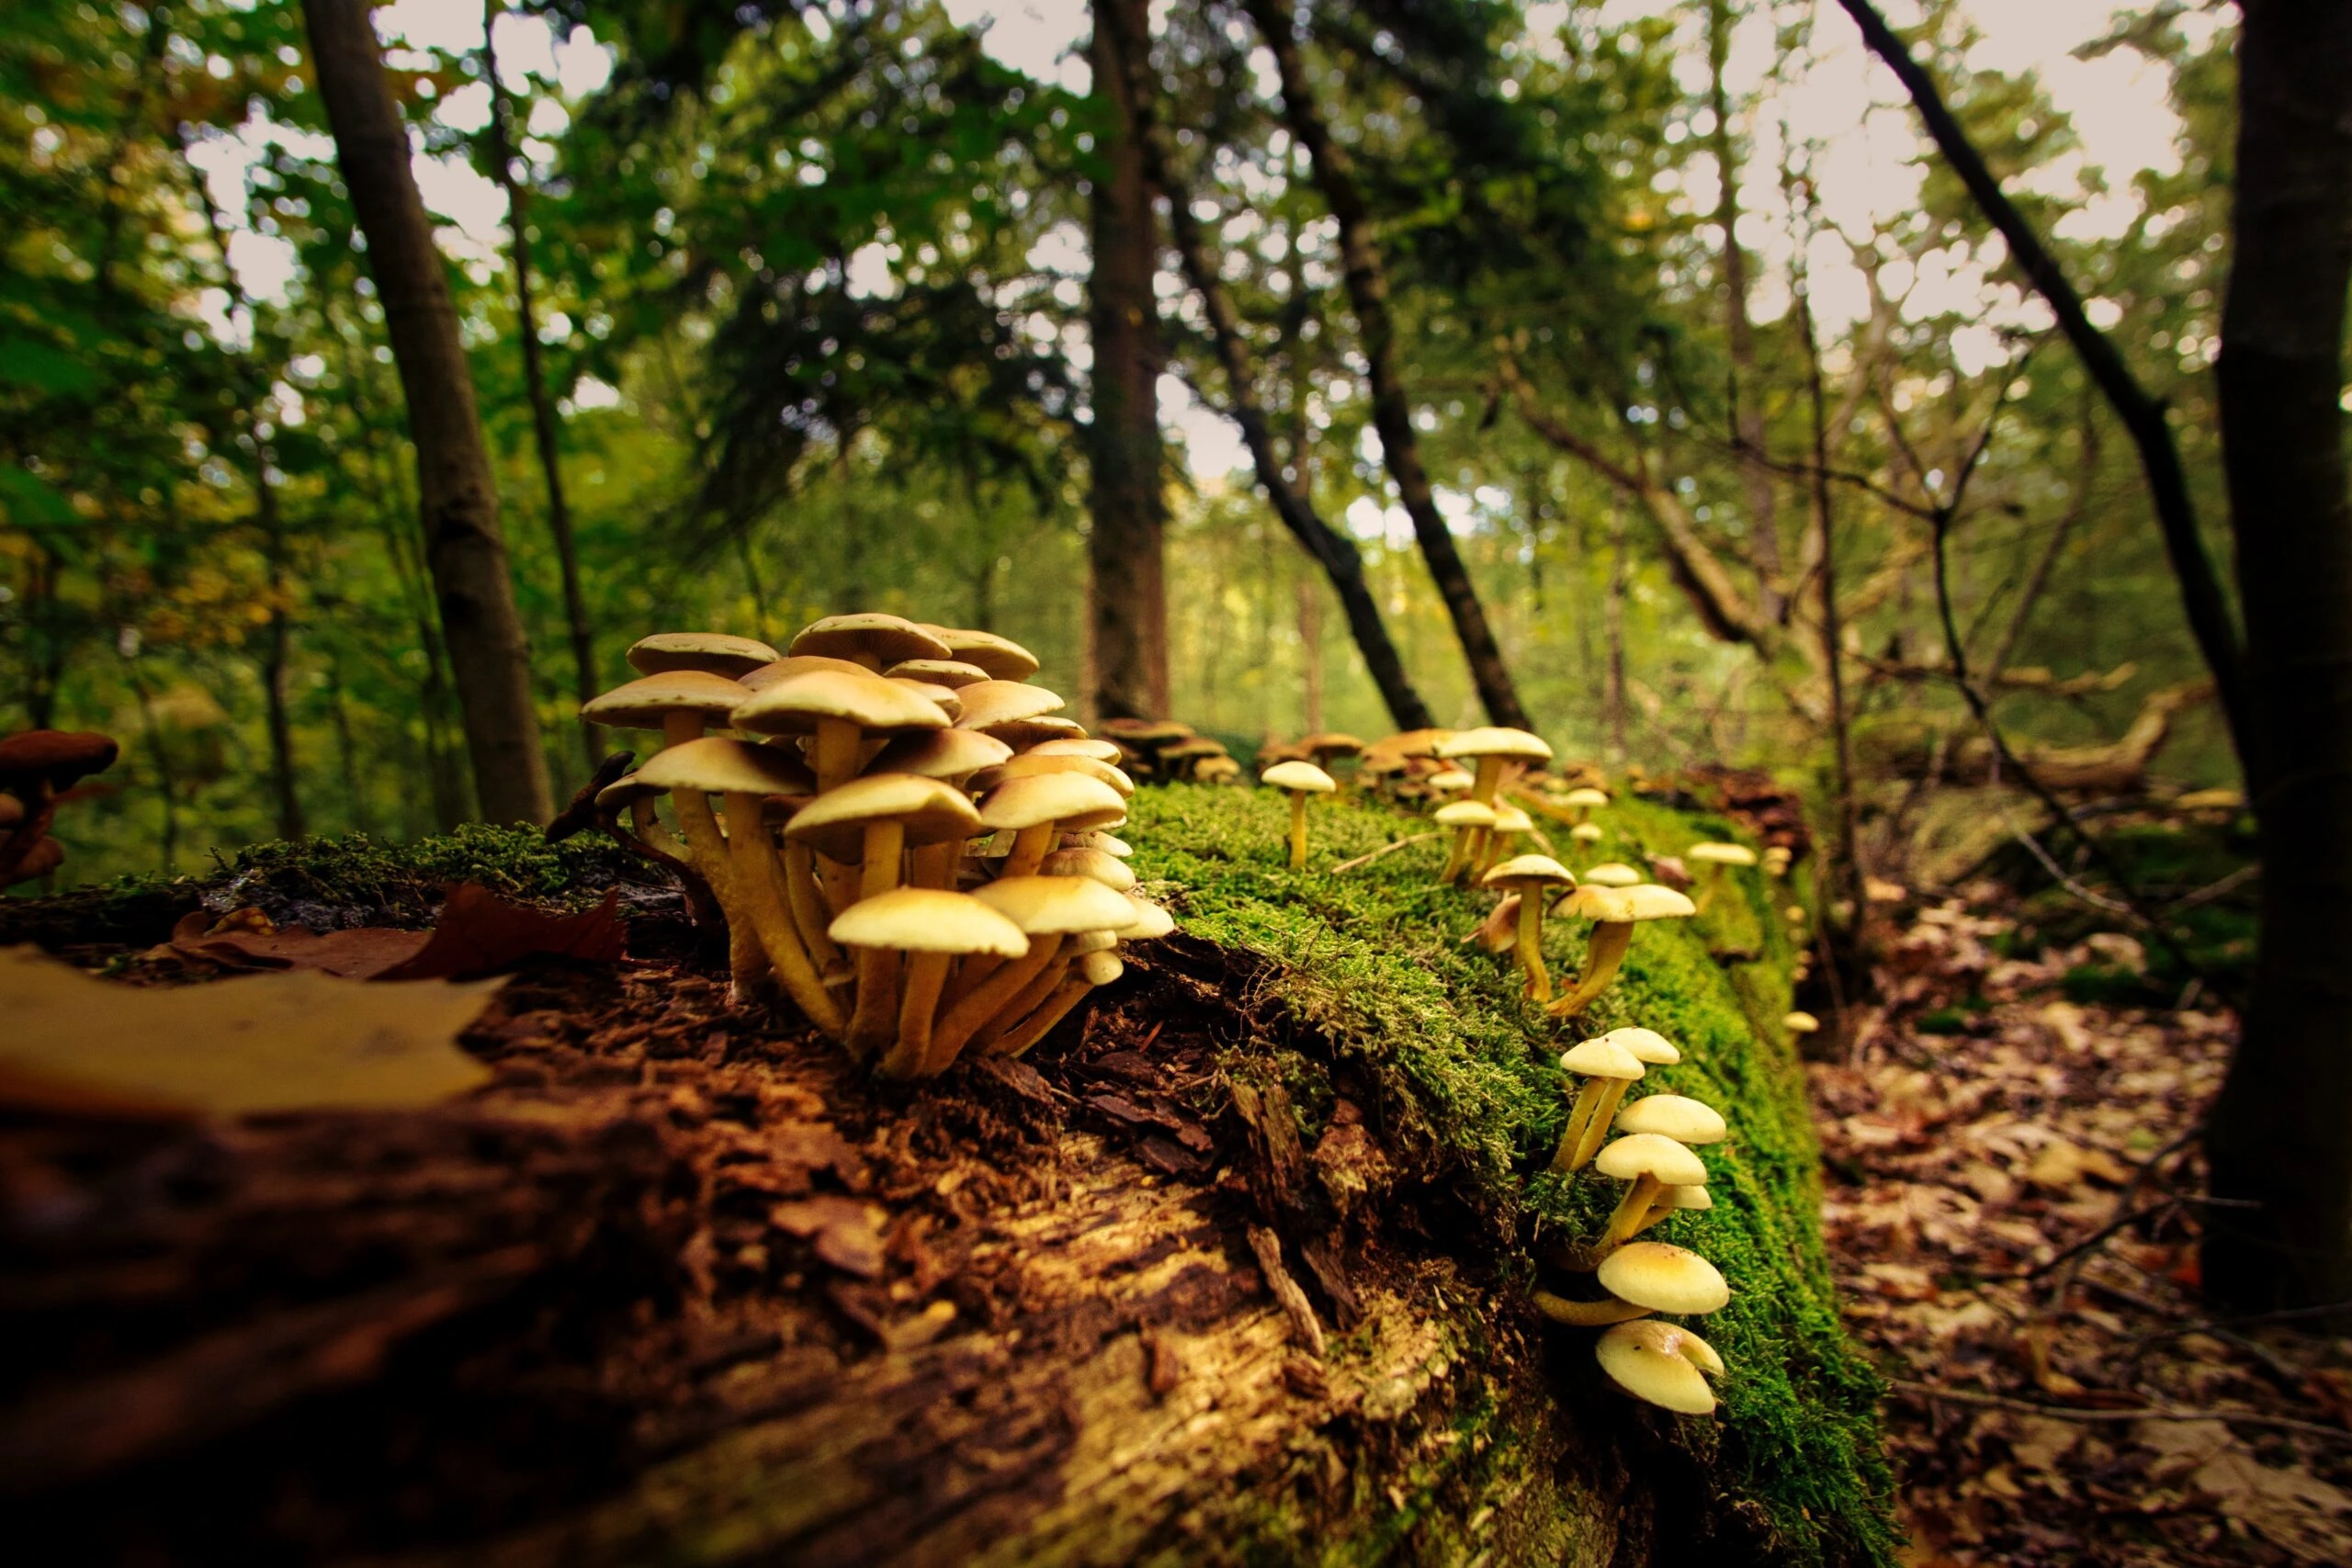 joran-quinten-Mushrooms -unsplash